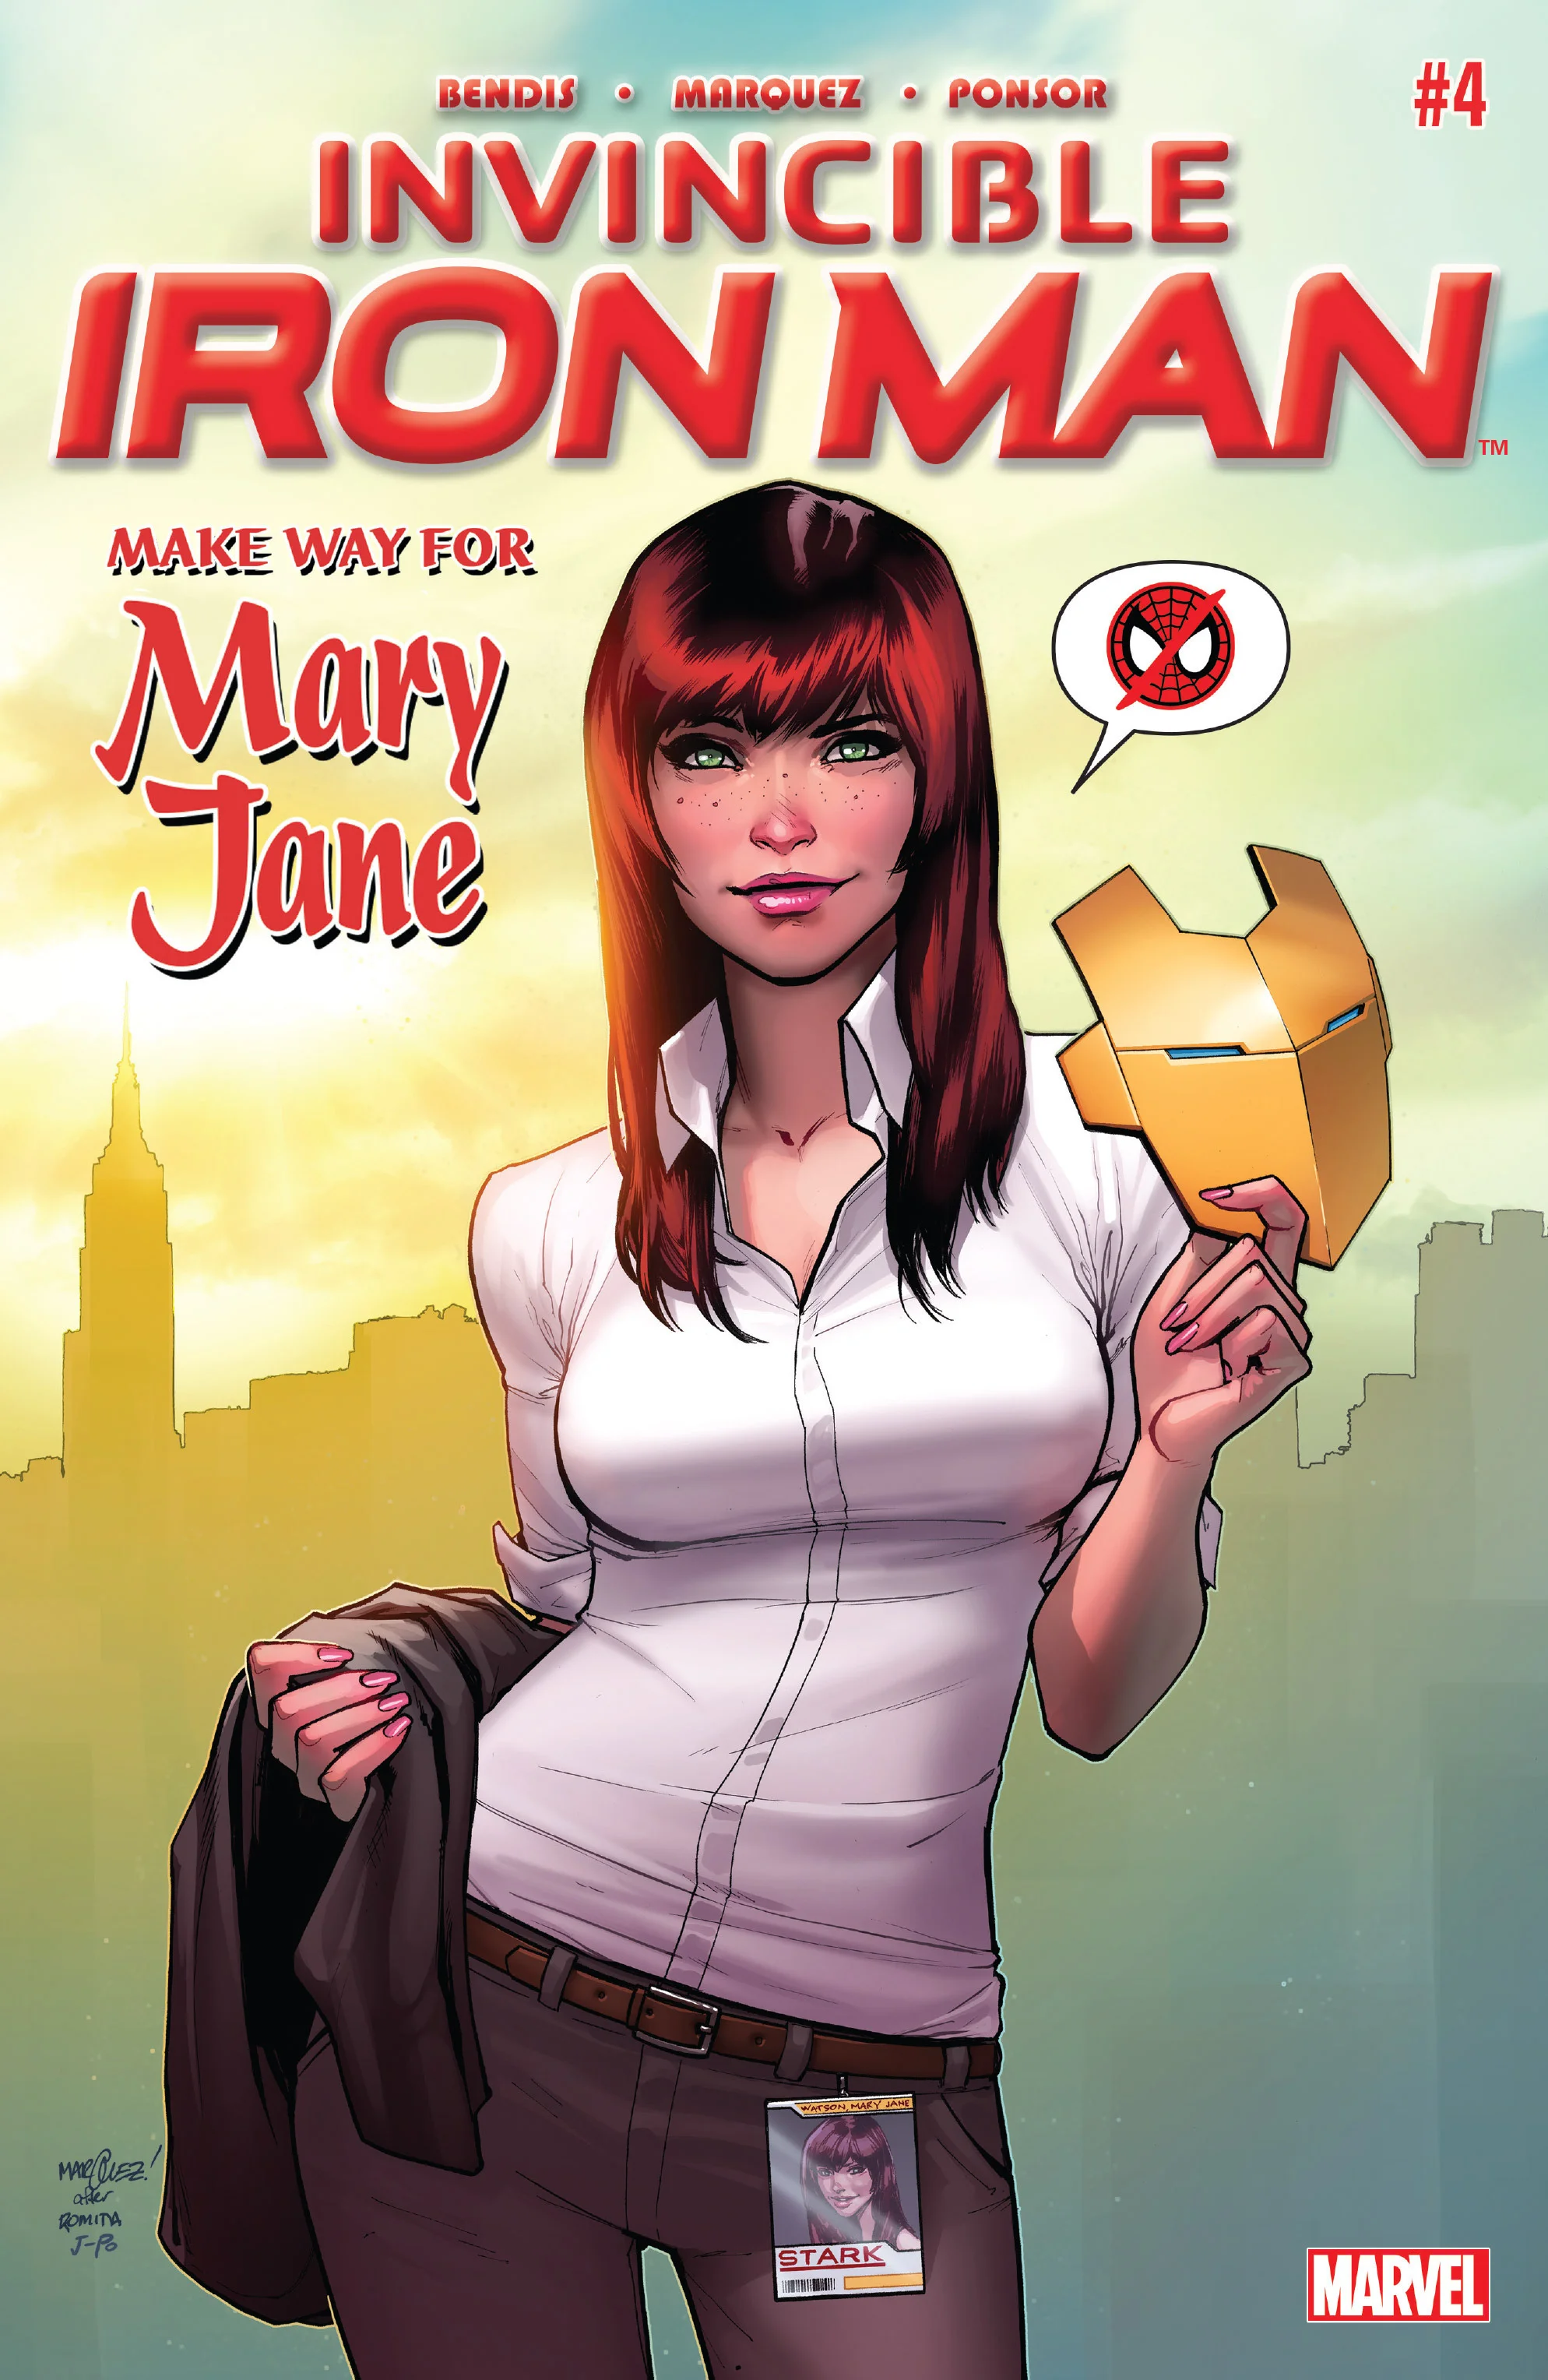 Мэри Джейн Уотсон — жена Человека-паука, модель, помощница Старка. Как менялся образ в комиксах? - фото 13